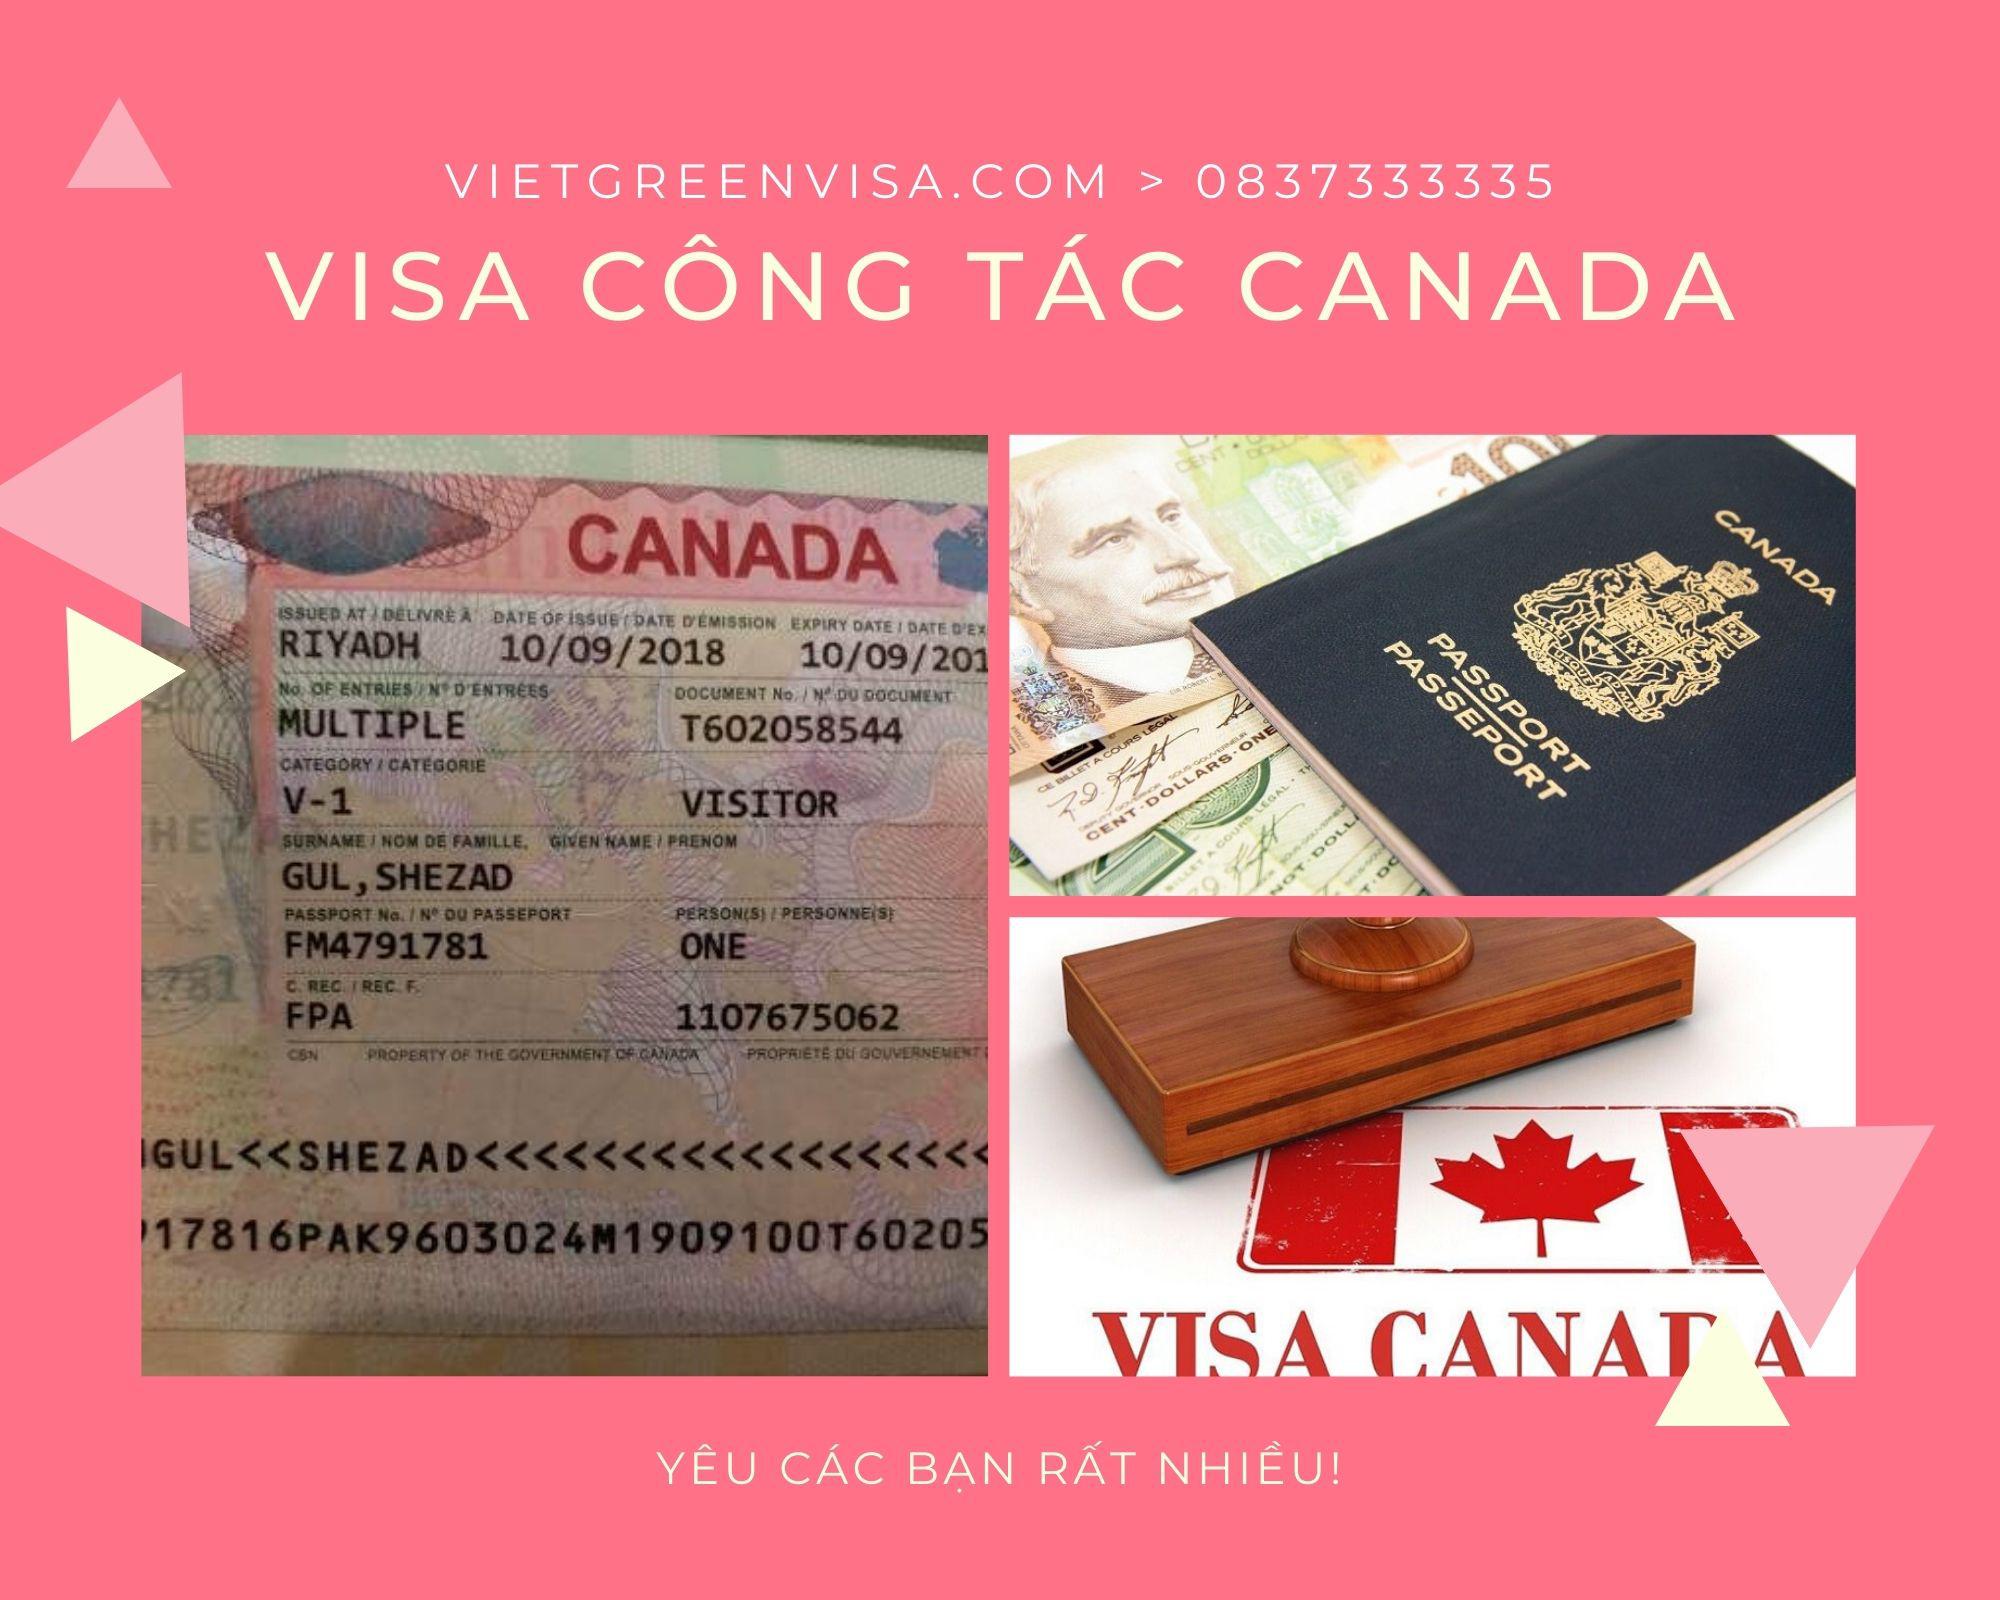 Dịch vụ xin Visa Canada công tác uy tín, giá rẻ, nhanh gọn